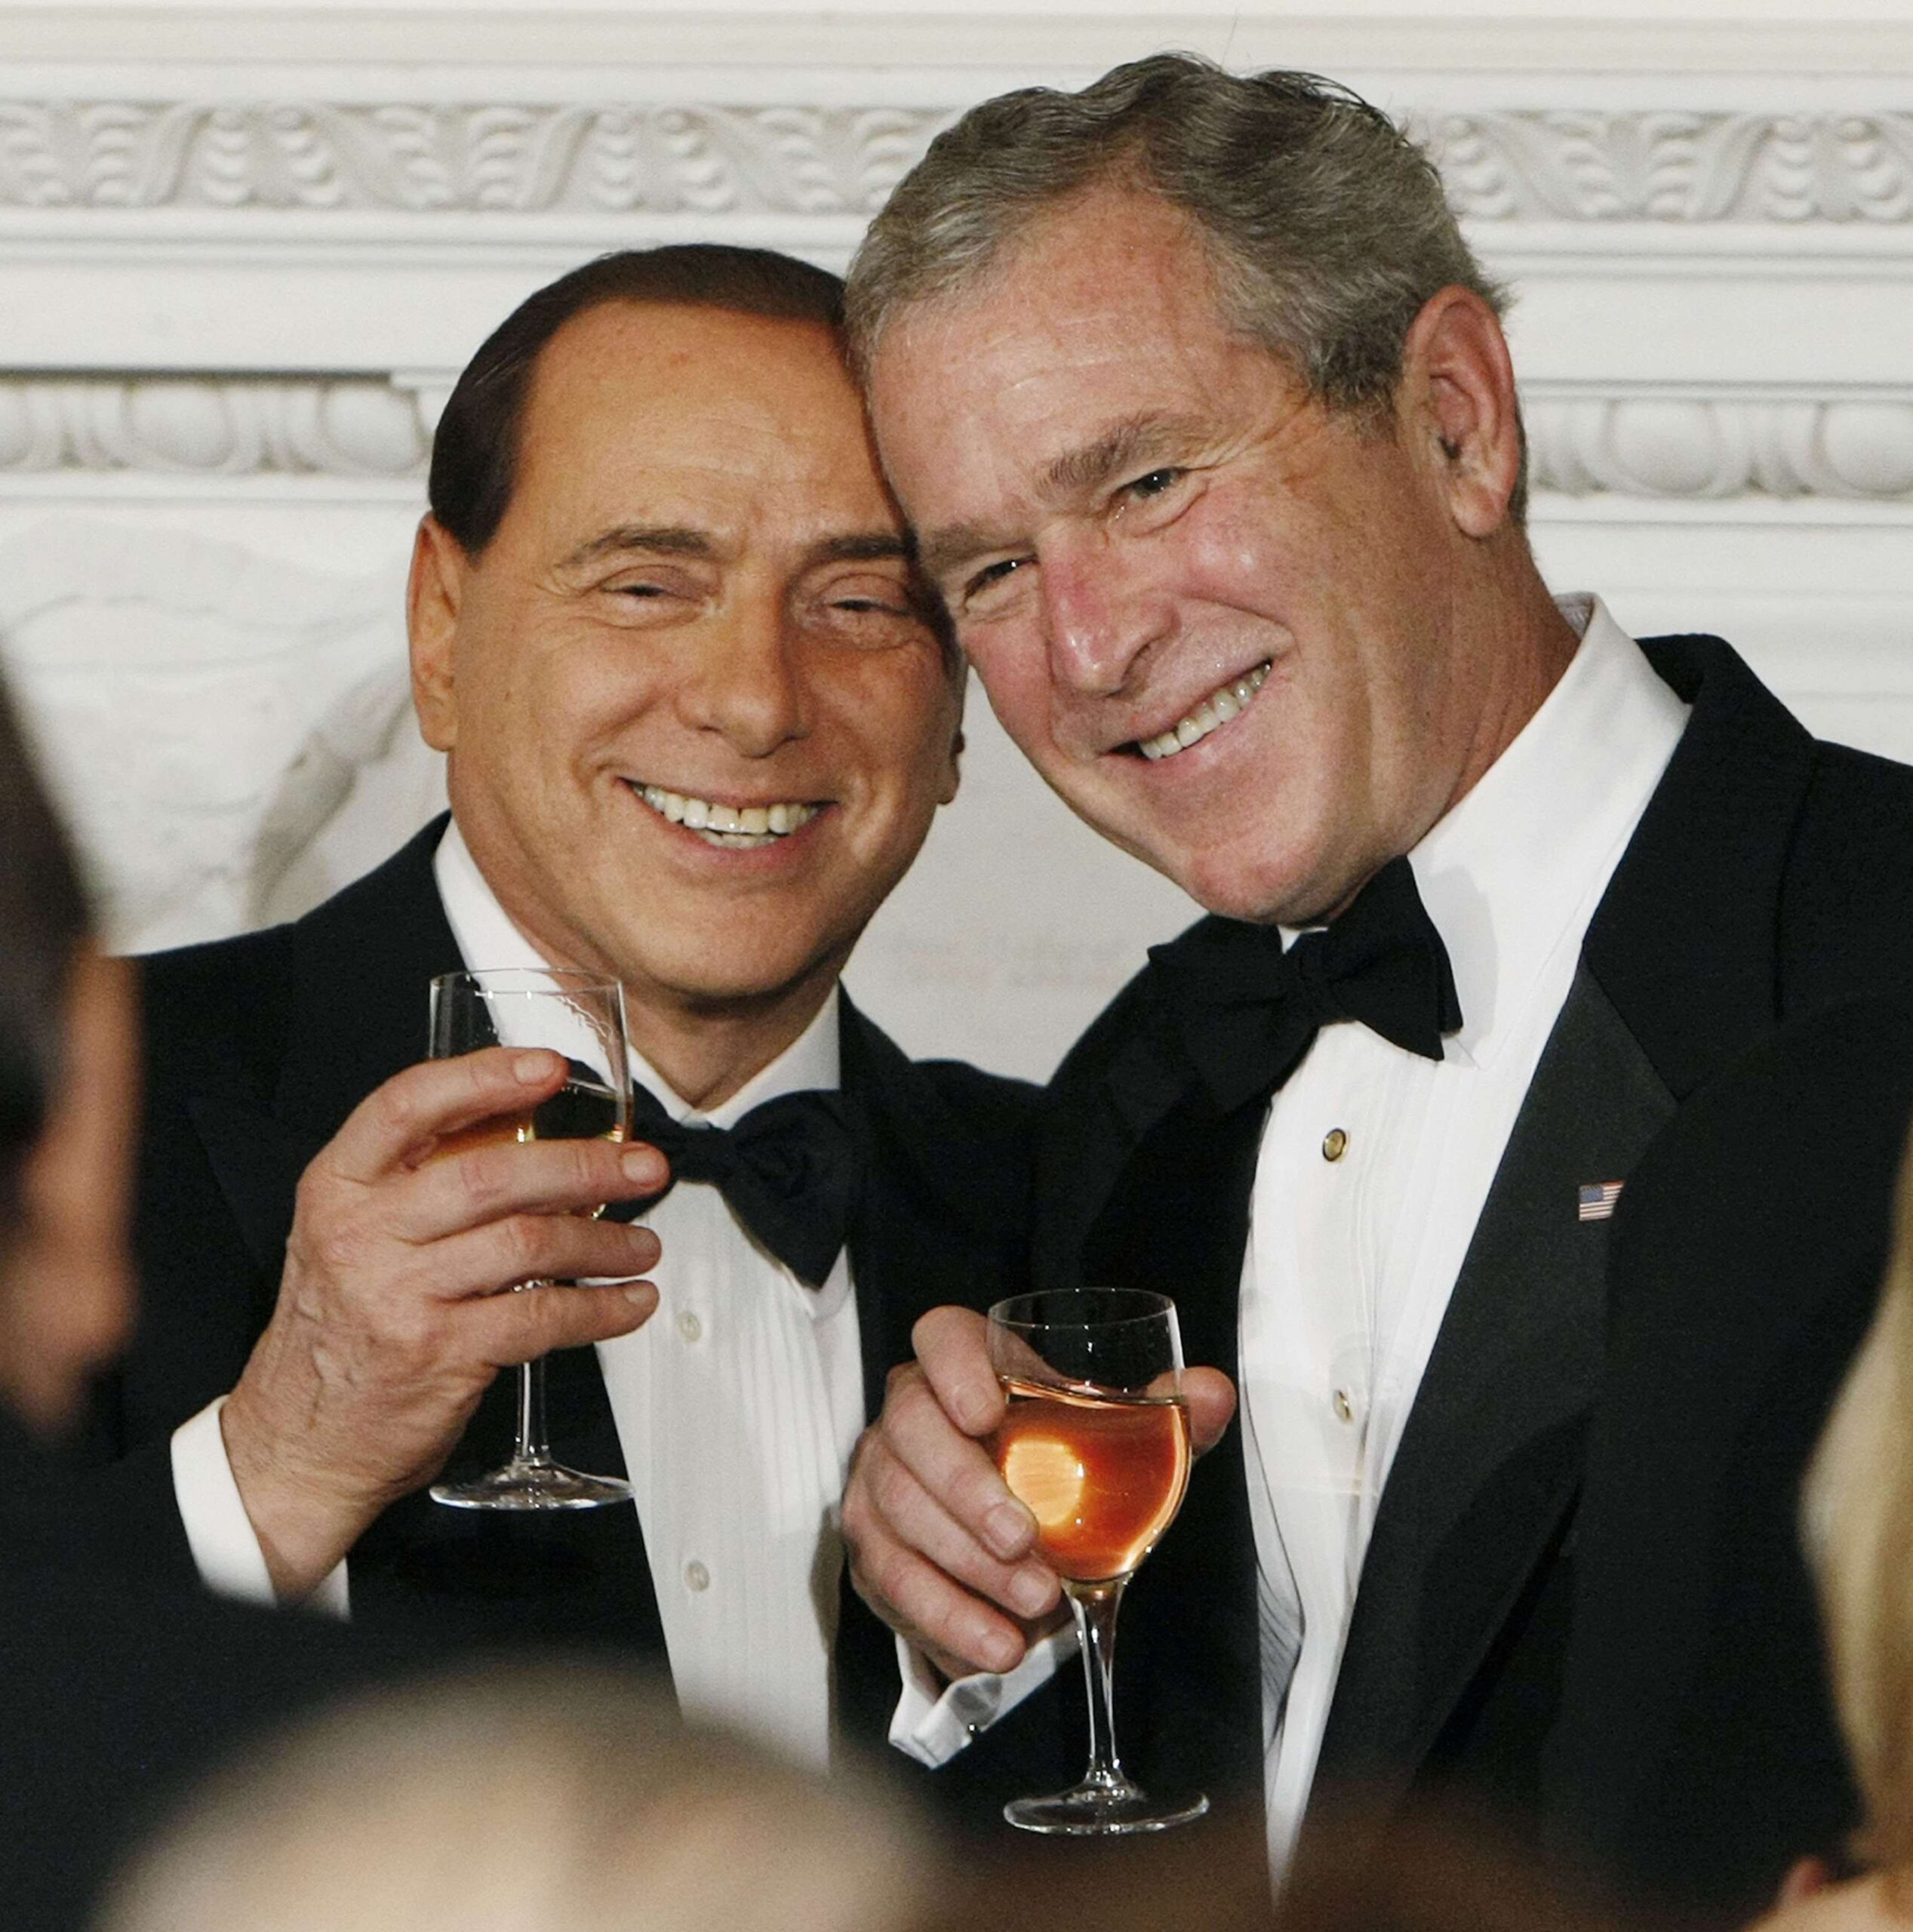 Lunes 13 de octubre de 2008 - el Presidente George Bush, a la derecha, brinda por el Primer Ministro italiano Silvio Berlusconi durante una cena oficial en el Comedor de Estado en Washington. © Pablo Martínez Monsivais/AP/SIPA